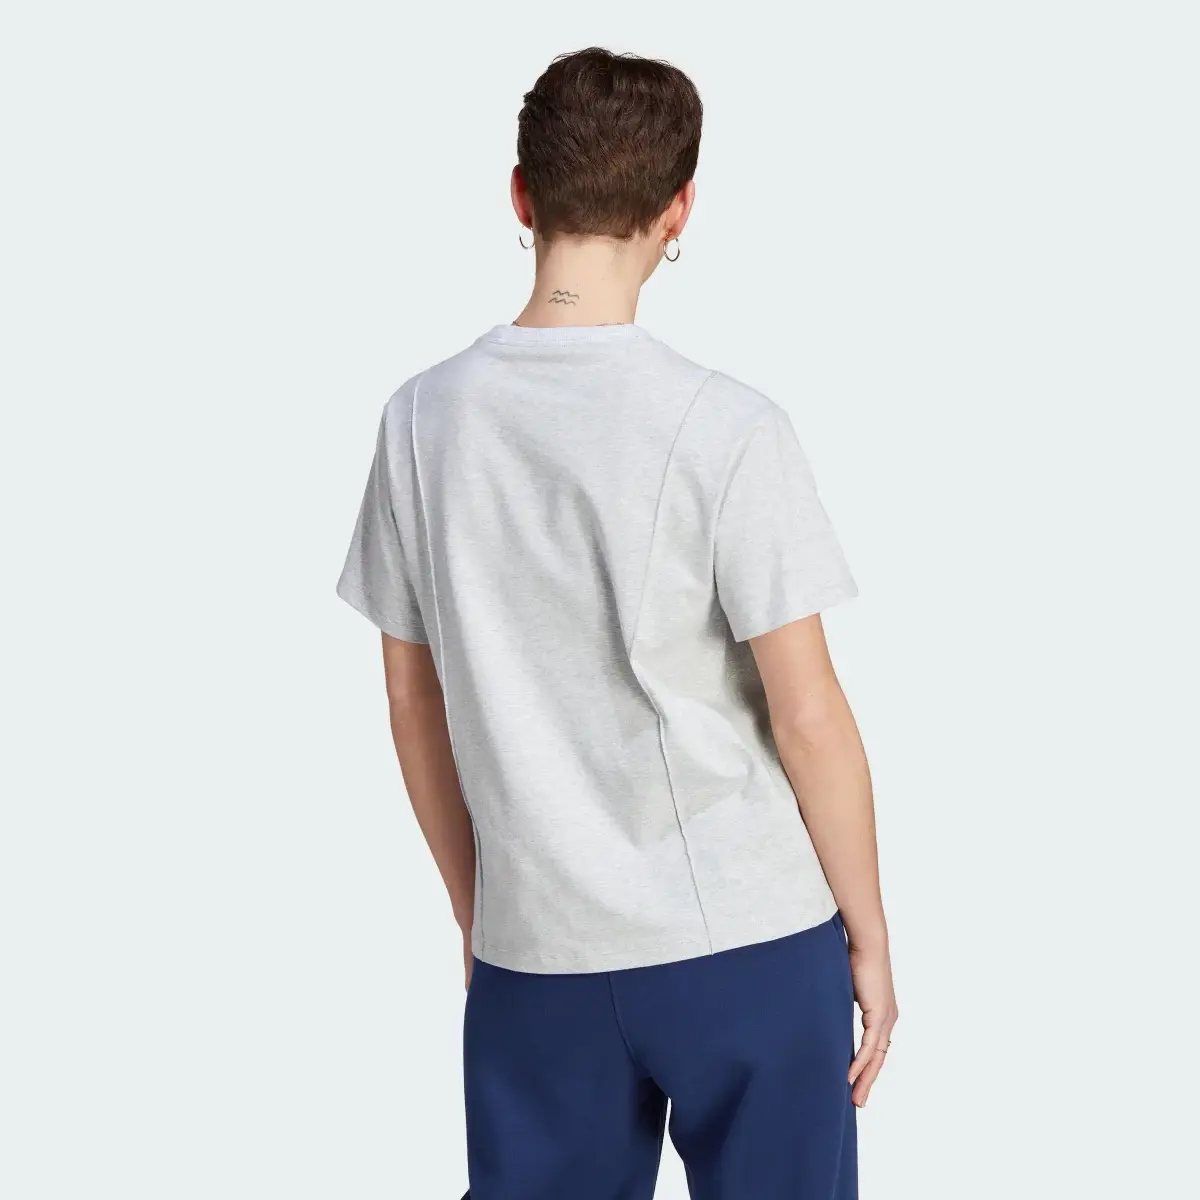 Adidas T-shirt Premium Essentials. 3